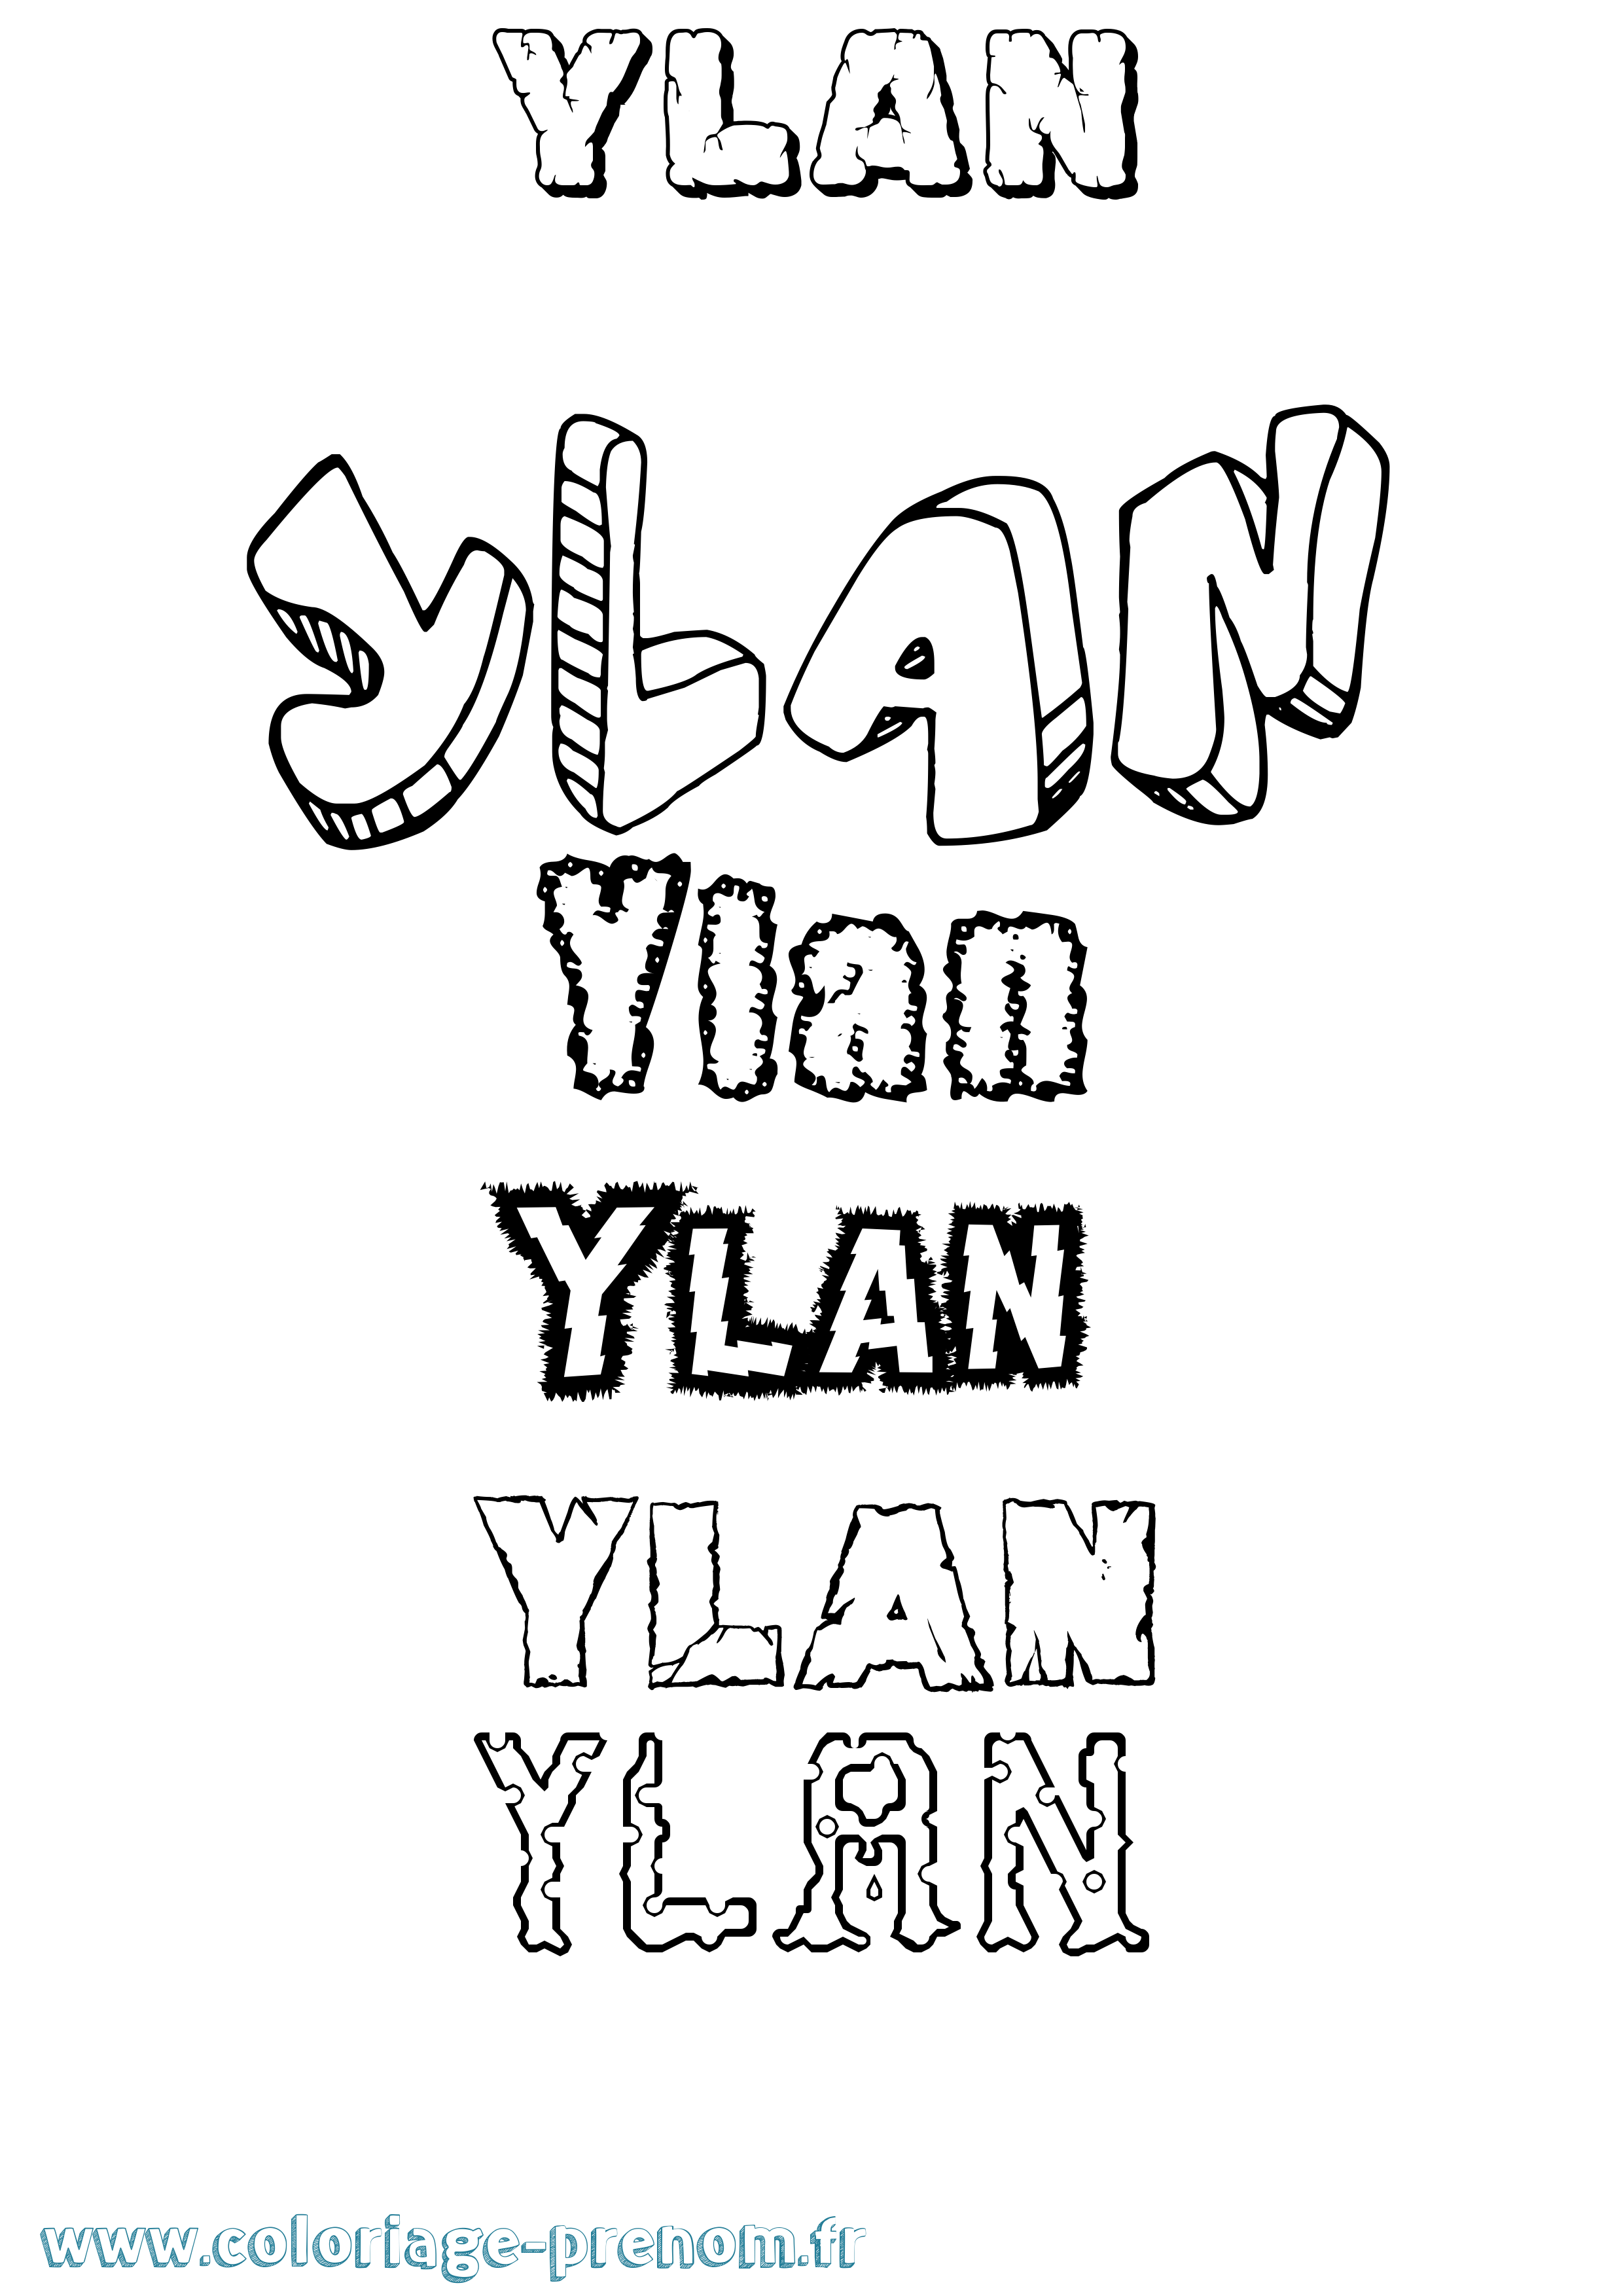 Coloriage prénom Ylan